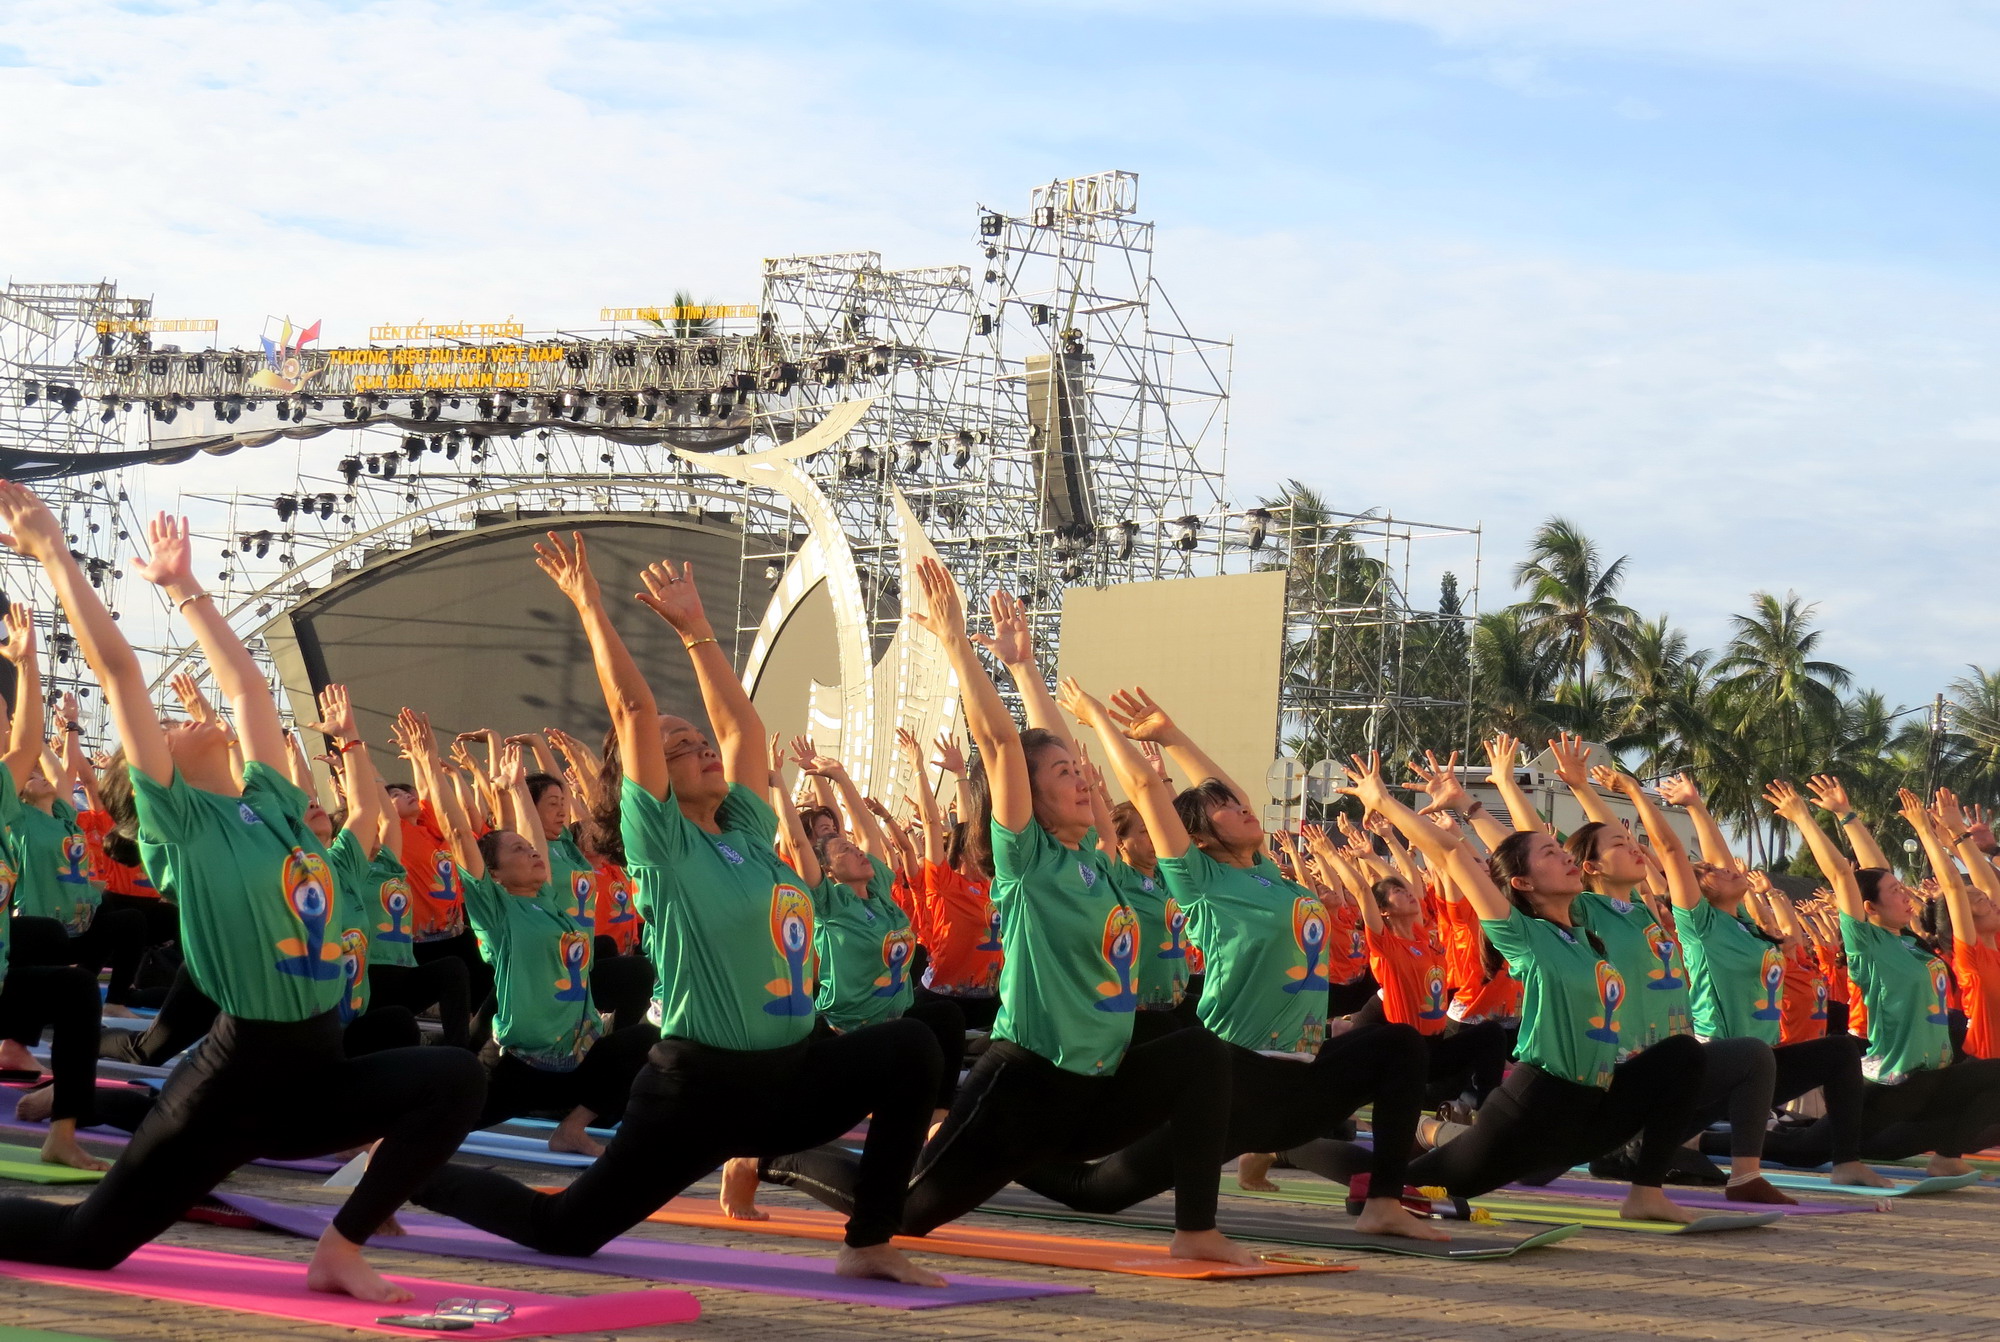 Ngày 11/12/2014, Đại hội đồng Liên hiệp quốc đã công bố lấy ngày 21/6 hàng năm là Ngày quốc tế Yoga. Năm 2023 là năm thứ 9 hưởng ứng phong trào Ngày quốc tế Ypga tại Việt Nam